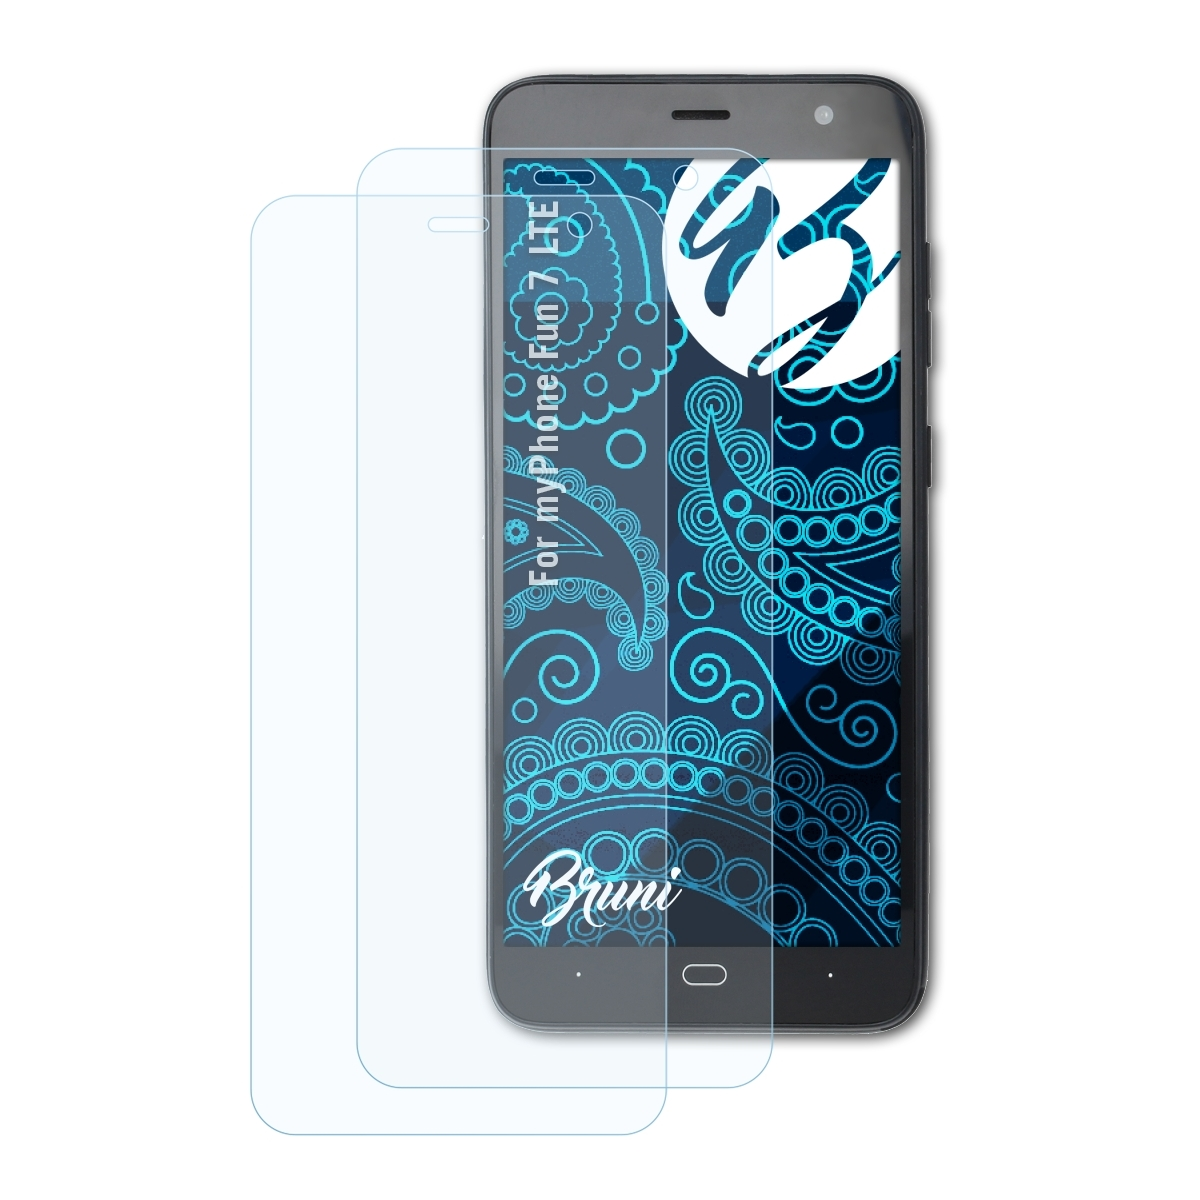 BRUNI 2x Basics-Clear Schutzfolie(für myPhone LTE) 7 Fun